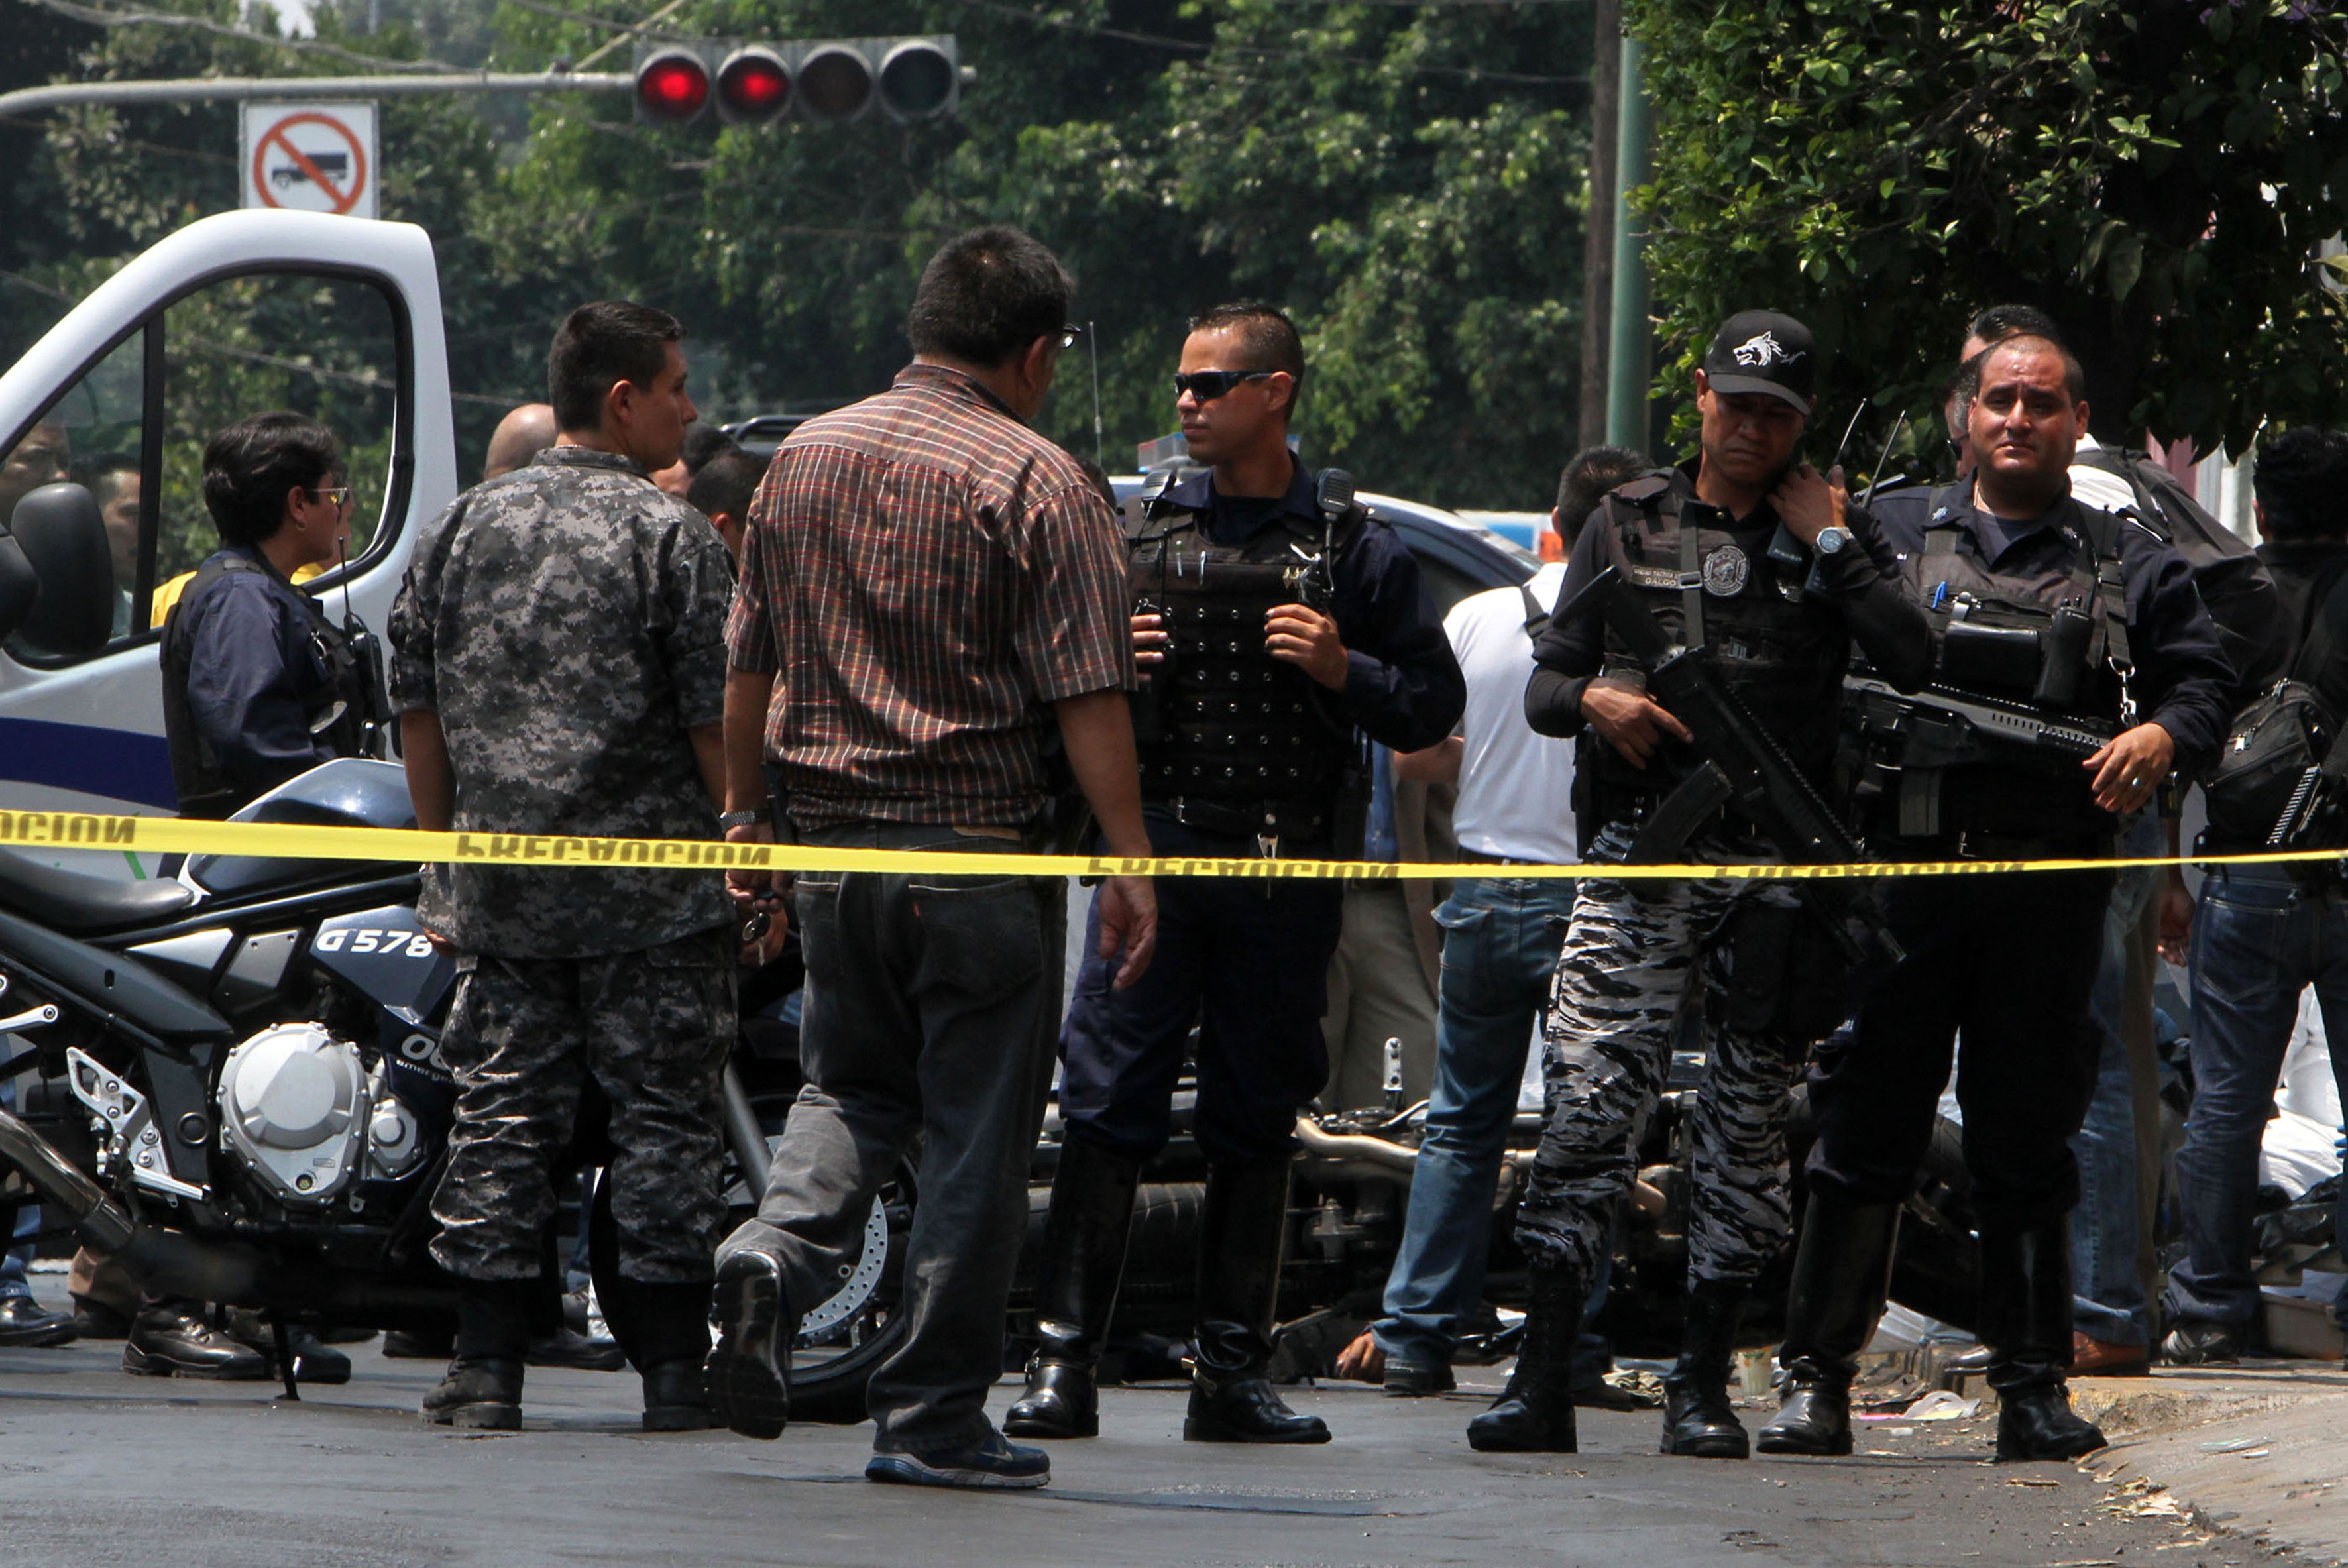 Dan A Conocer El Estado Psicol Gico Y Social De Los Polic As En Jalisco